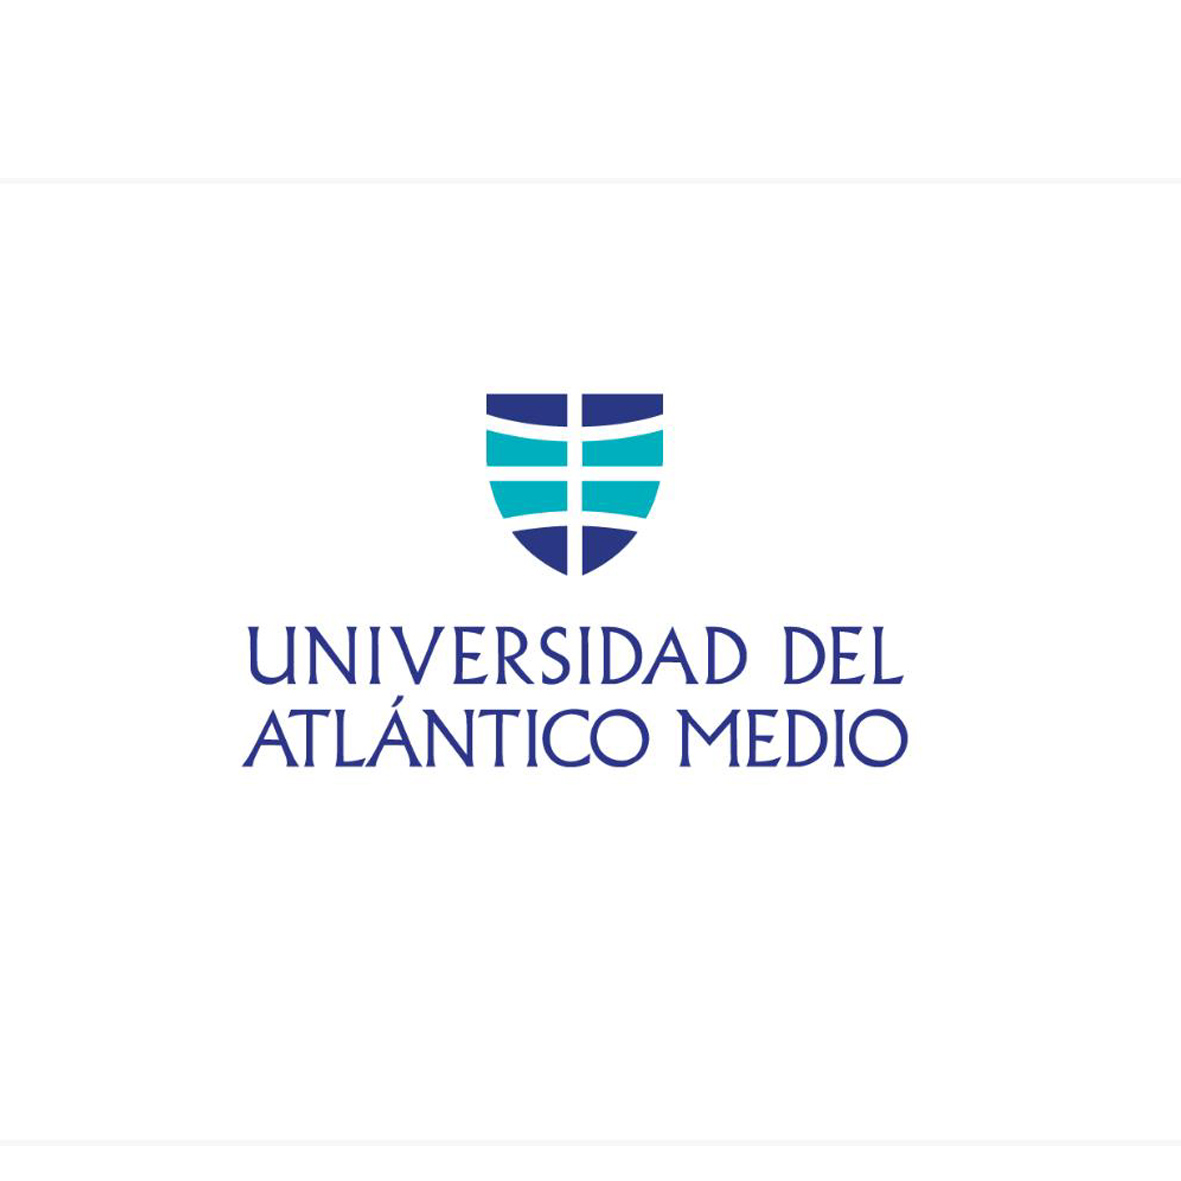 Universidad Atlantico Medio